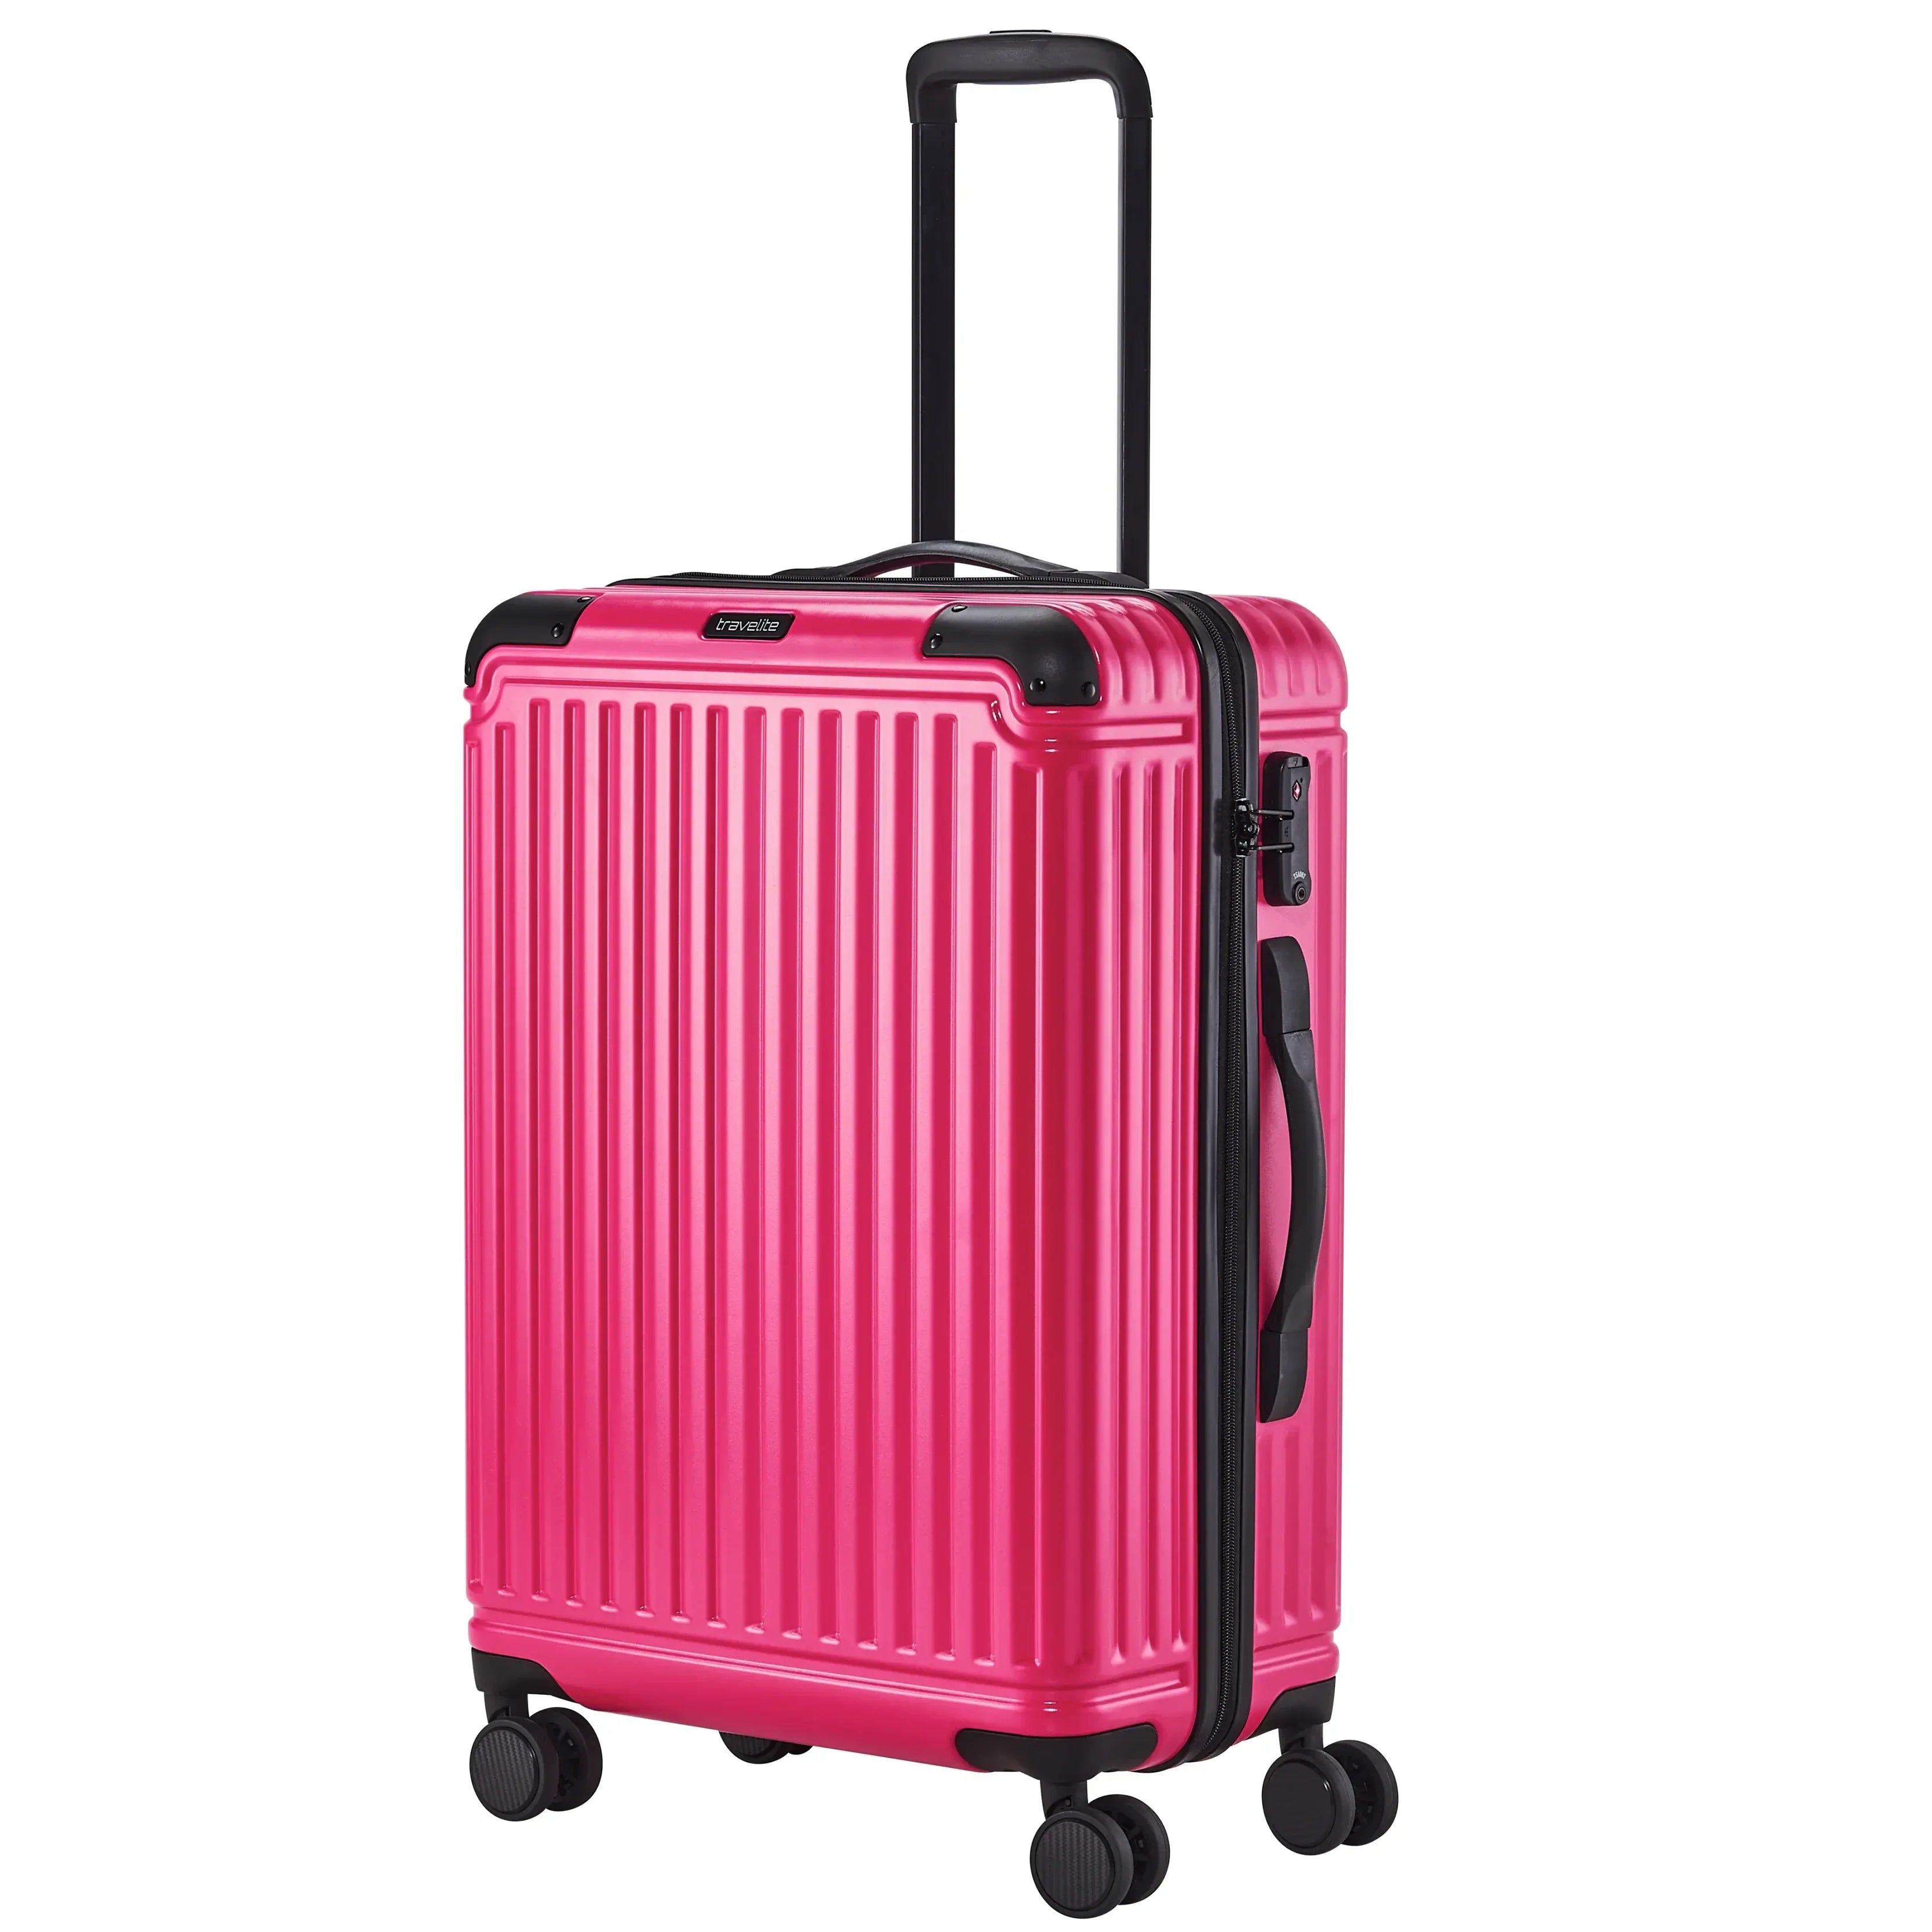 Travelite Cruise 4-Rollen Trolley 67 cm - Pink